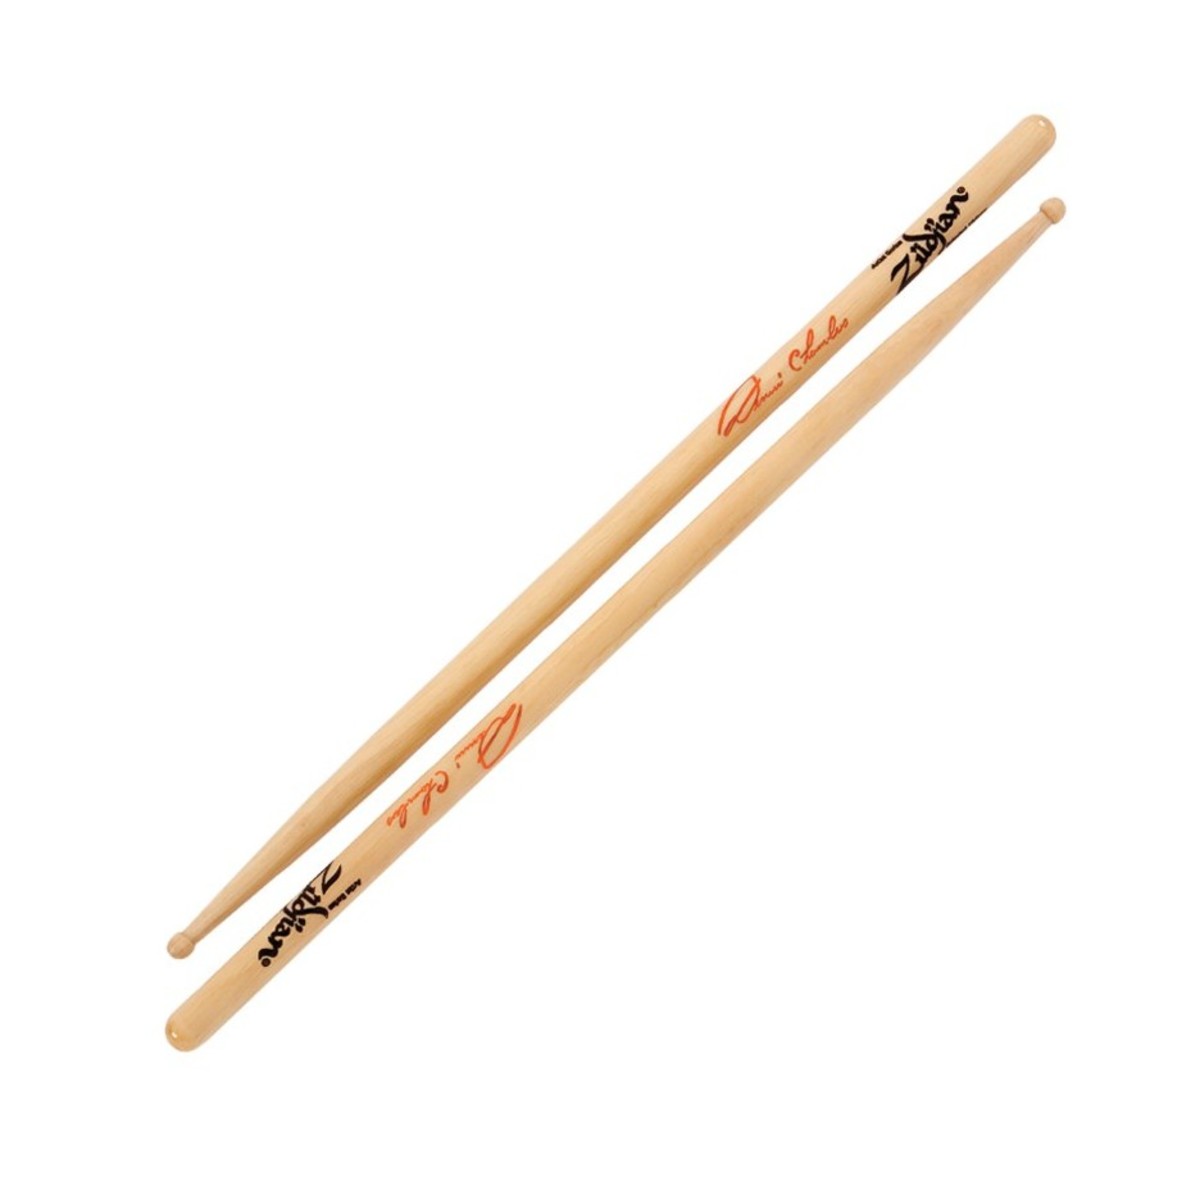 ZILDJIAN Drumsticks, Artist series, Dennis Chambers, wood tip, natural